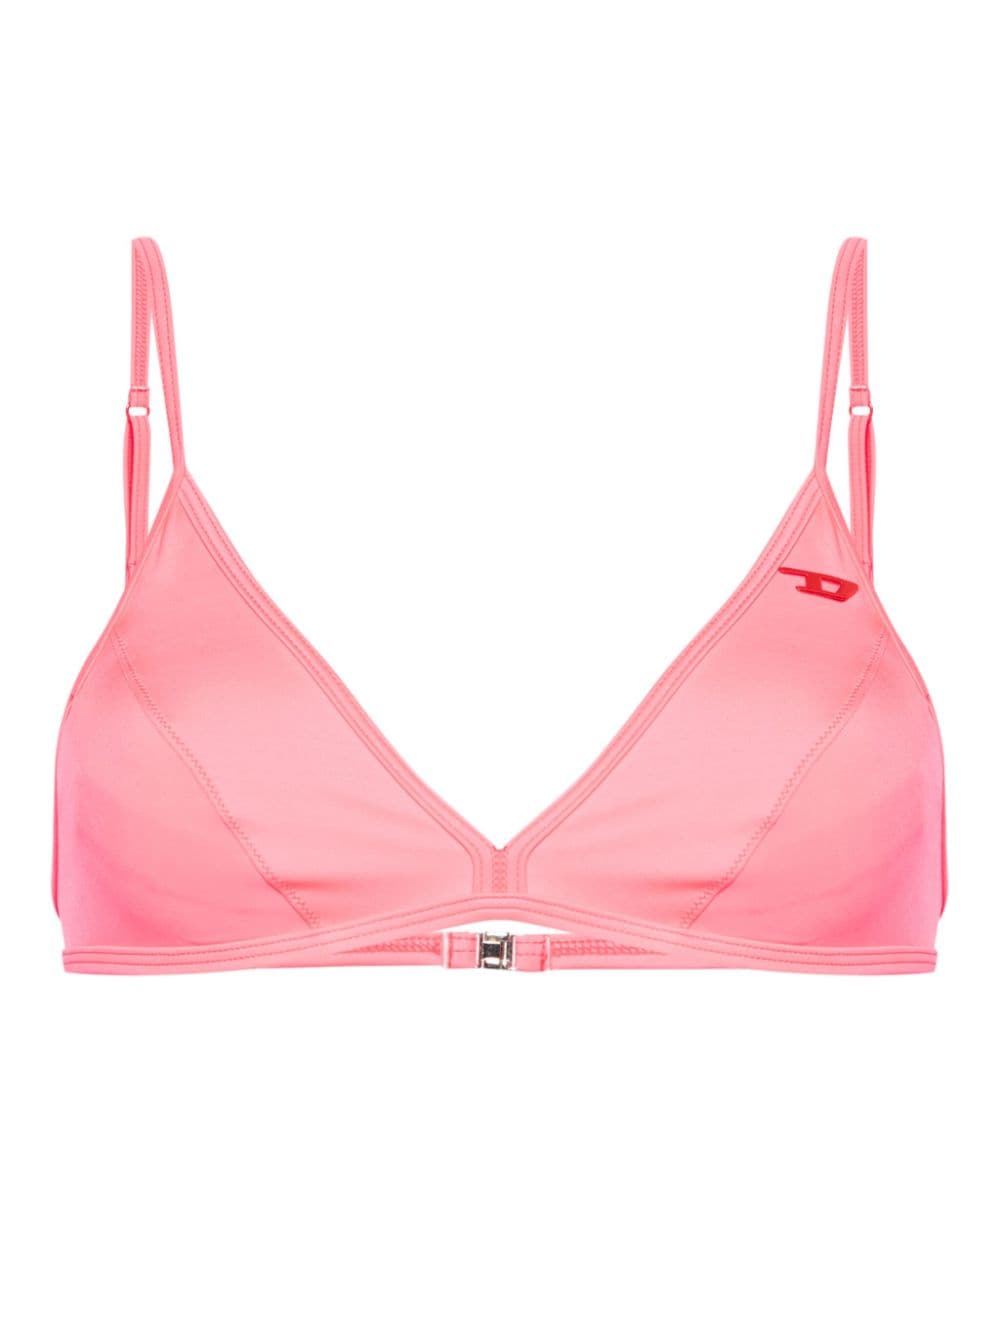 Diesel Marisol triangle bikini top - Pink von Diesel